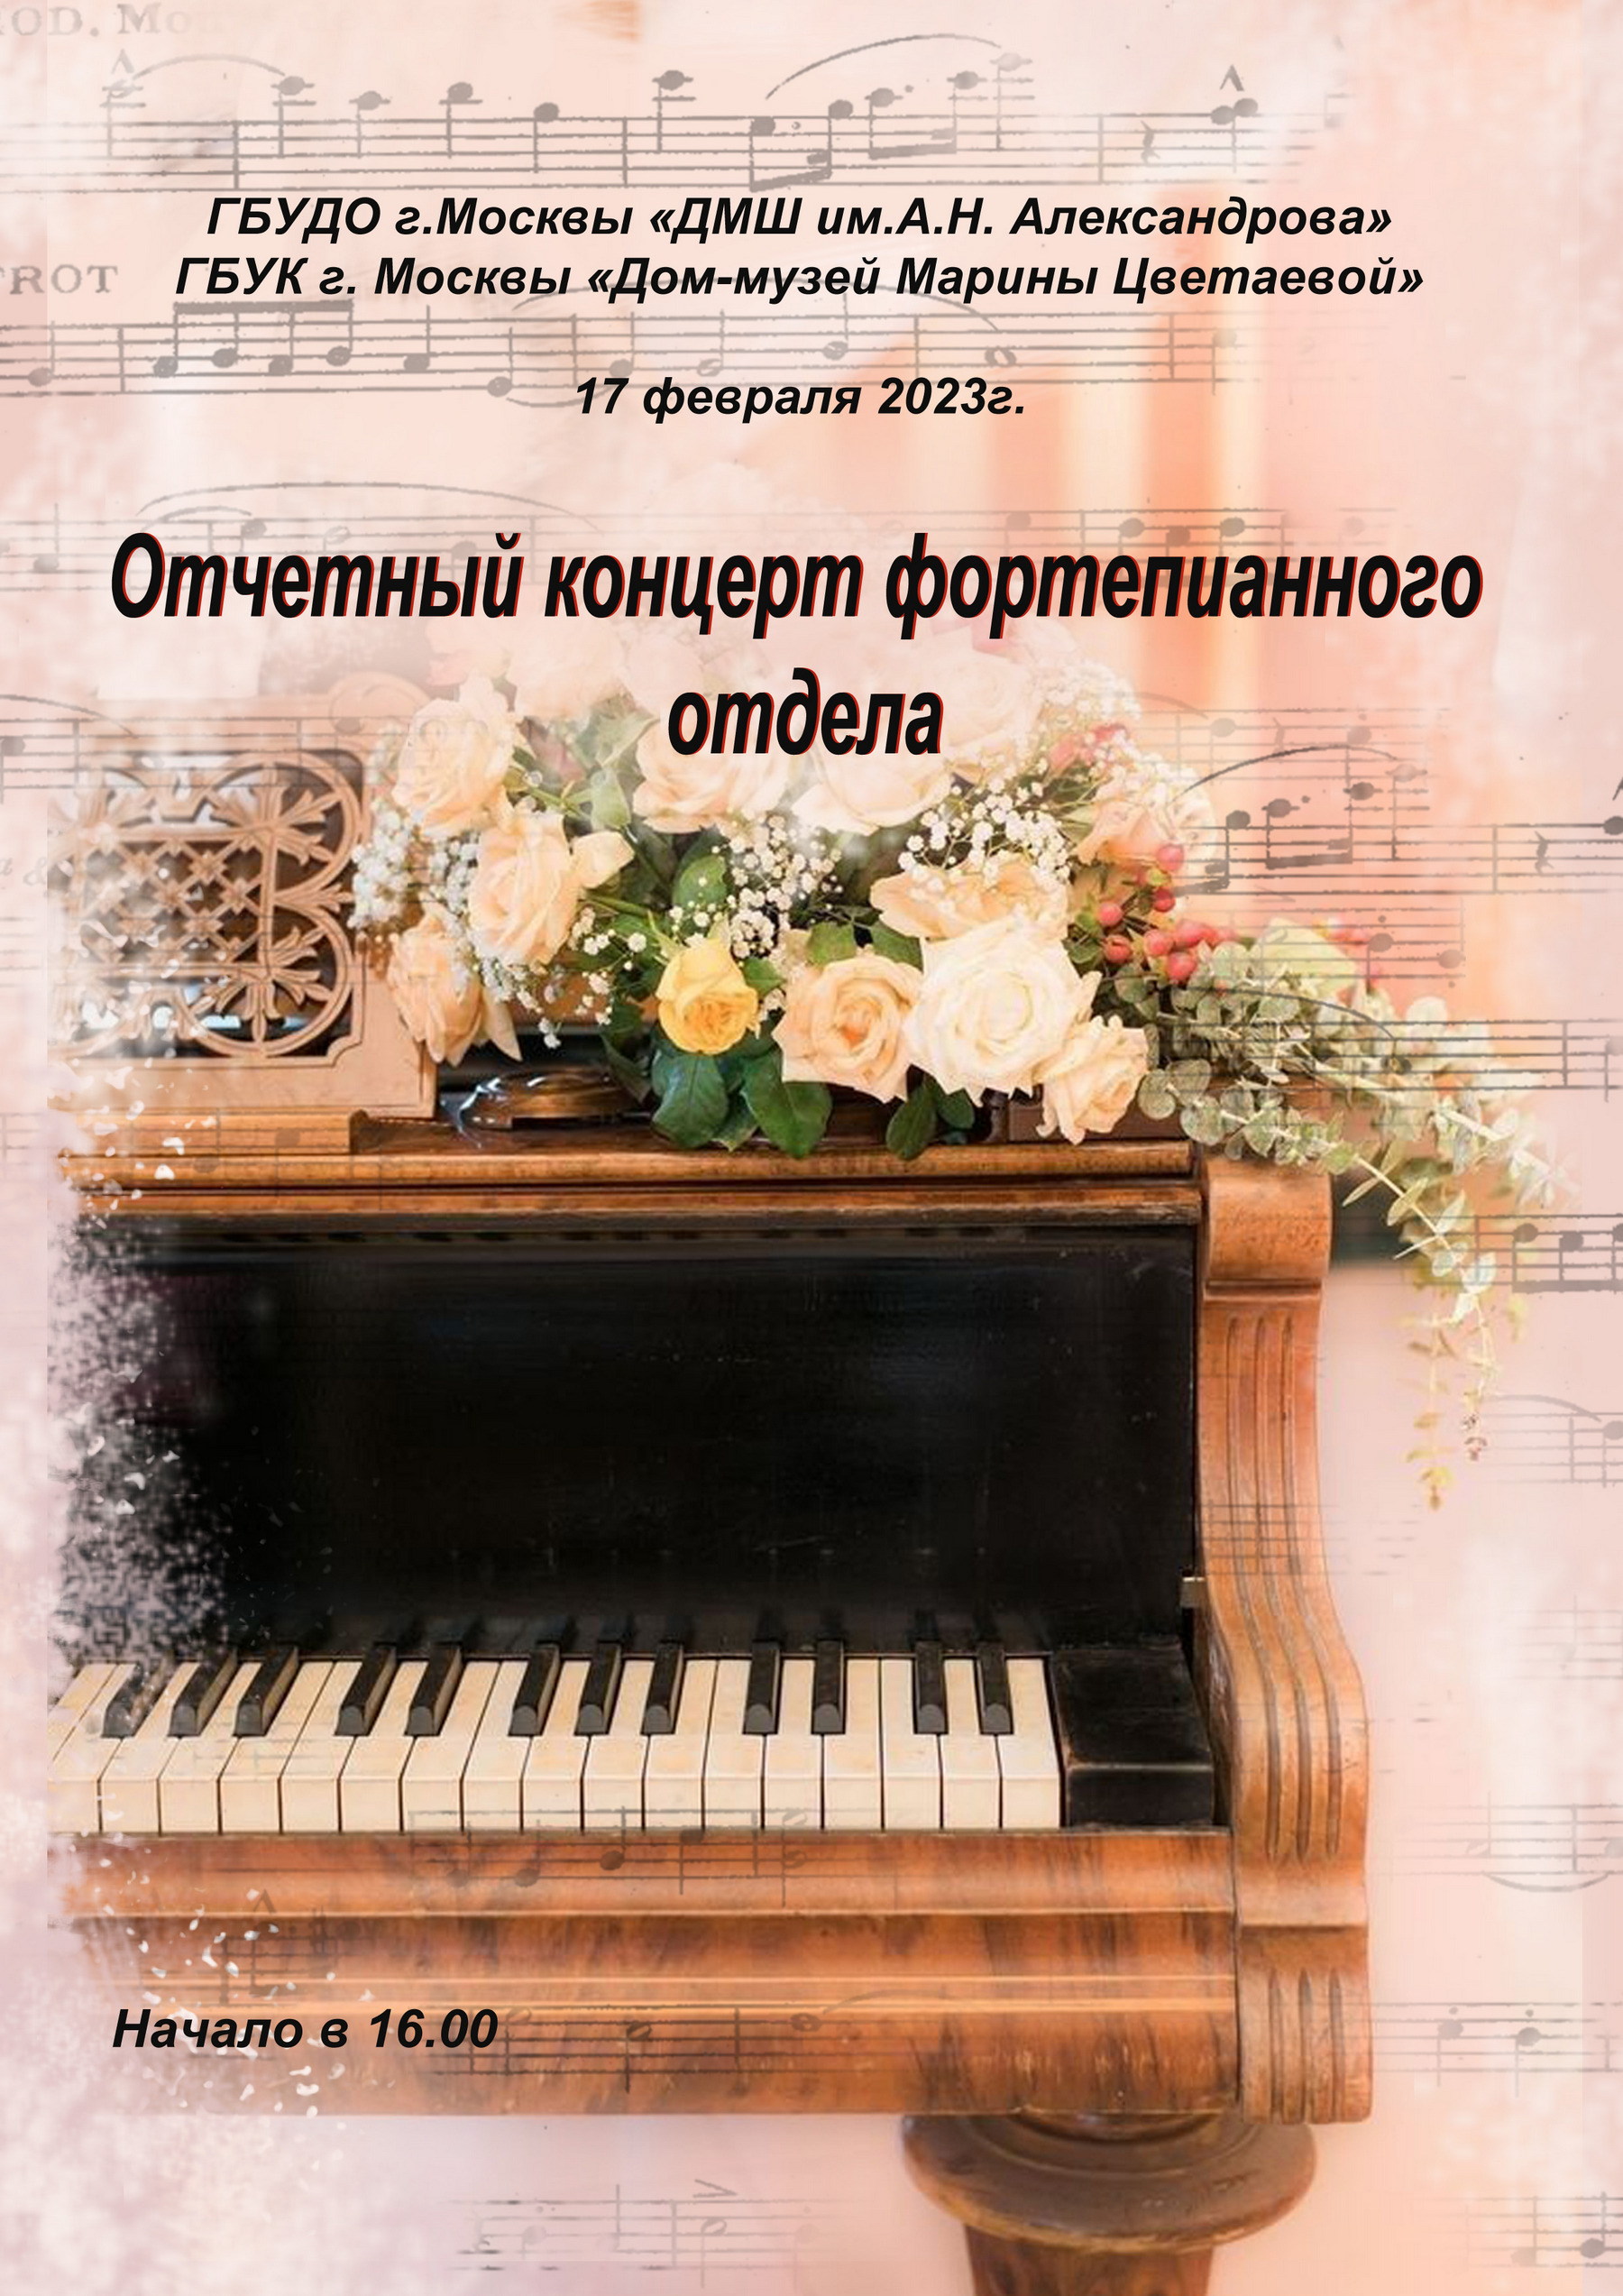 Иллюстрация: Отчетный концерт фортепианного отдела ДМШ им. А.Н. Александрова